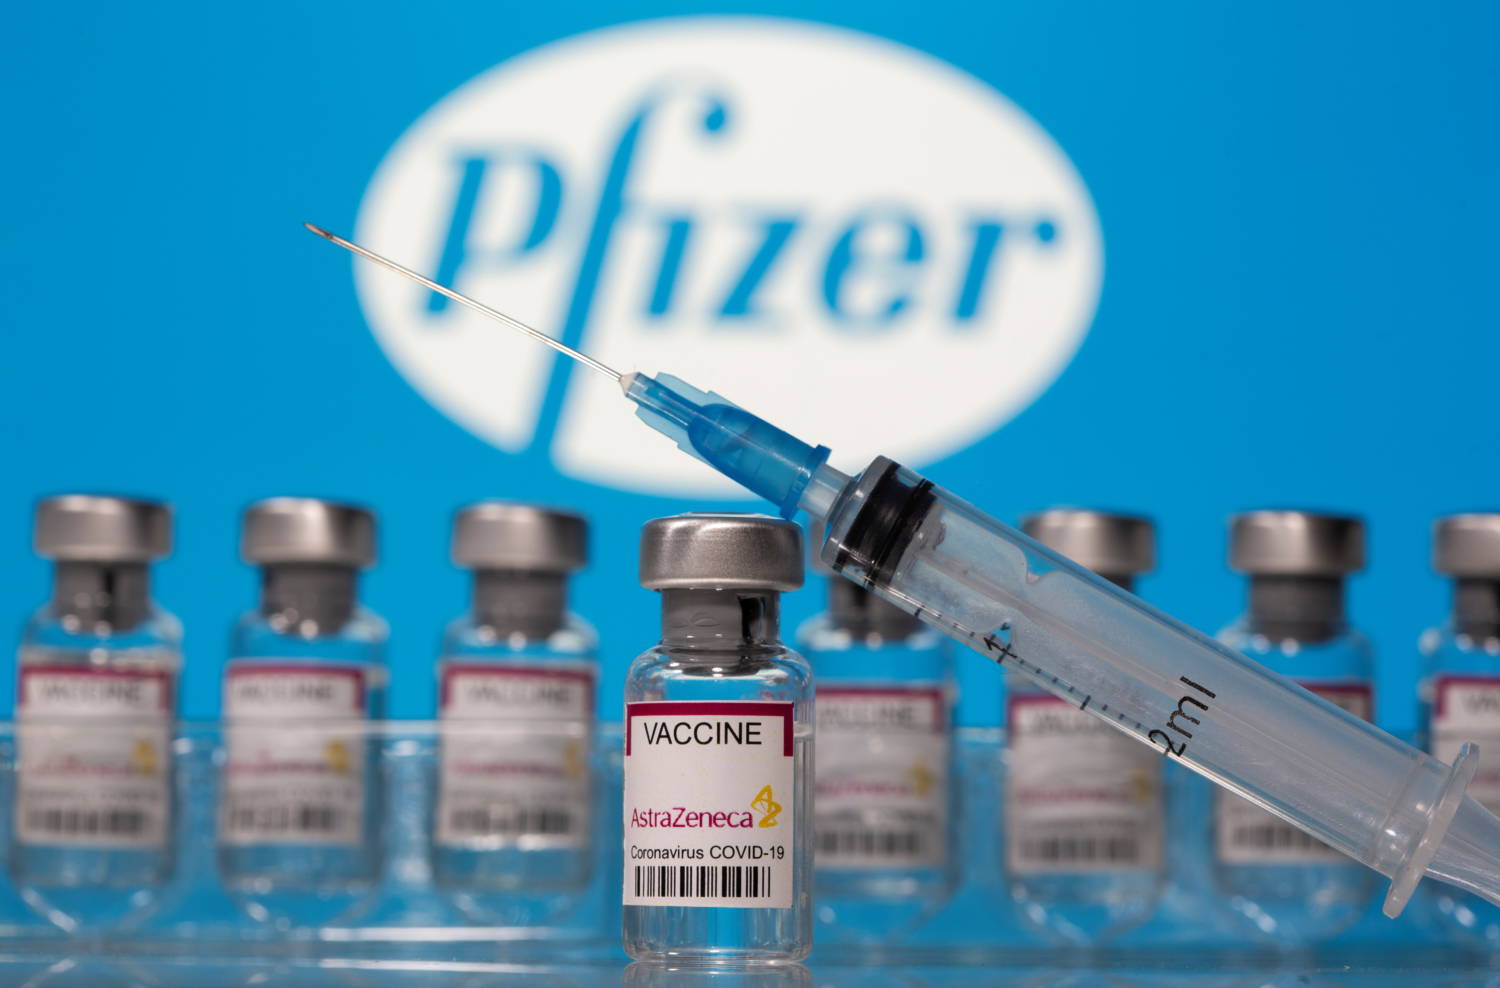 Az FDA arra kéri a bírót, hogy halasszák tovább a Pfizer szuri adatainak közzétételét legalább 2096-ig